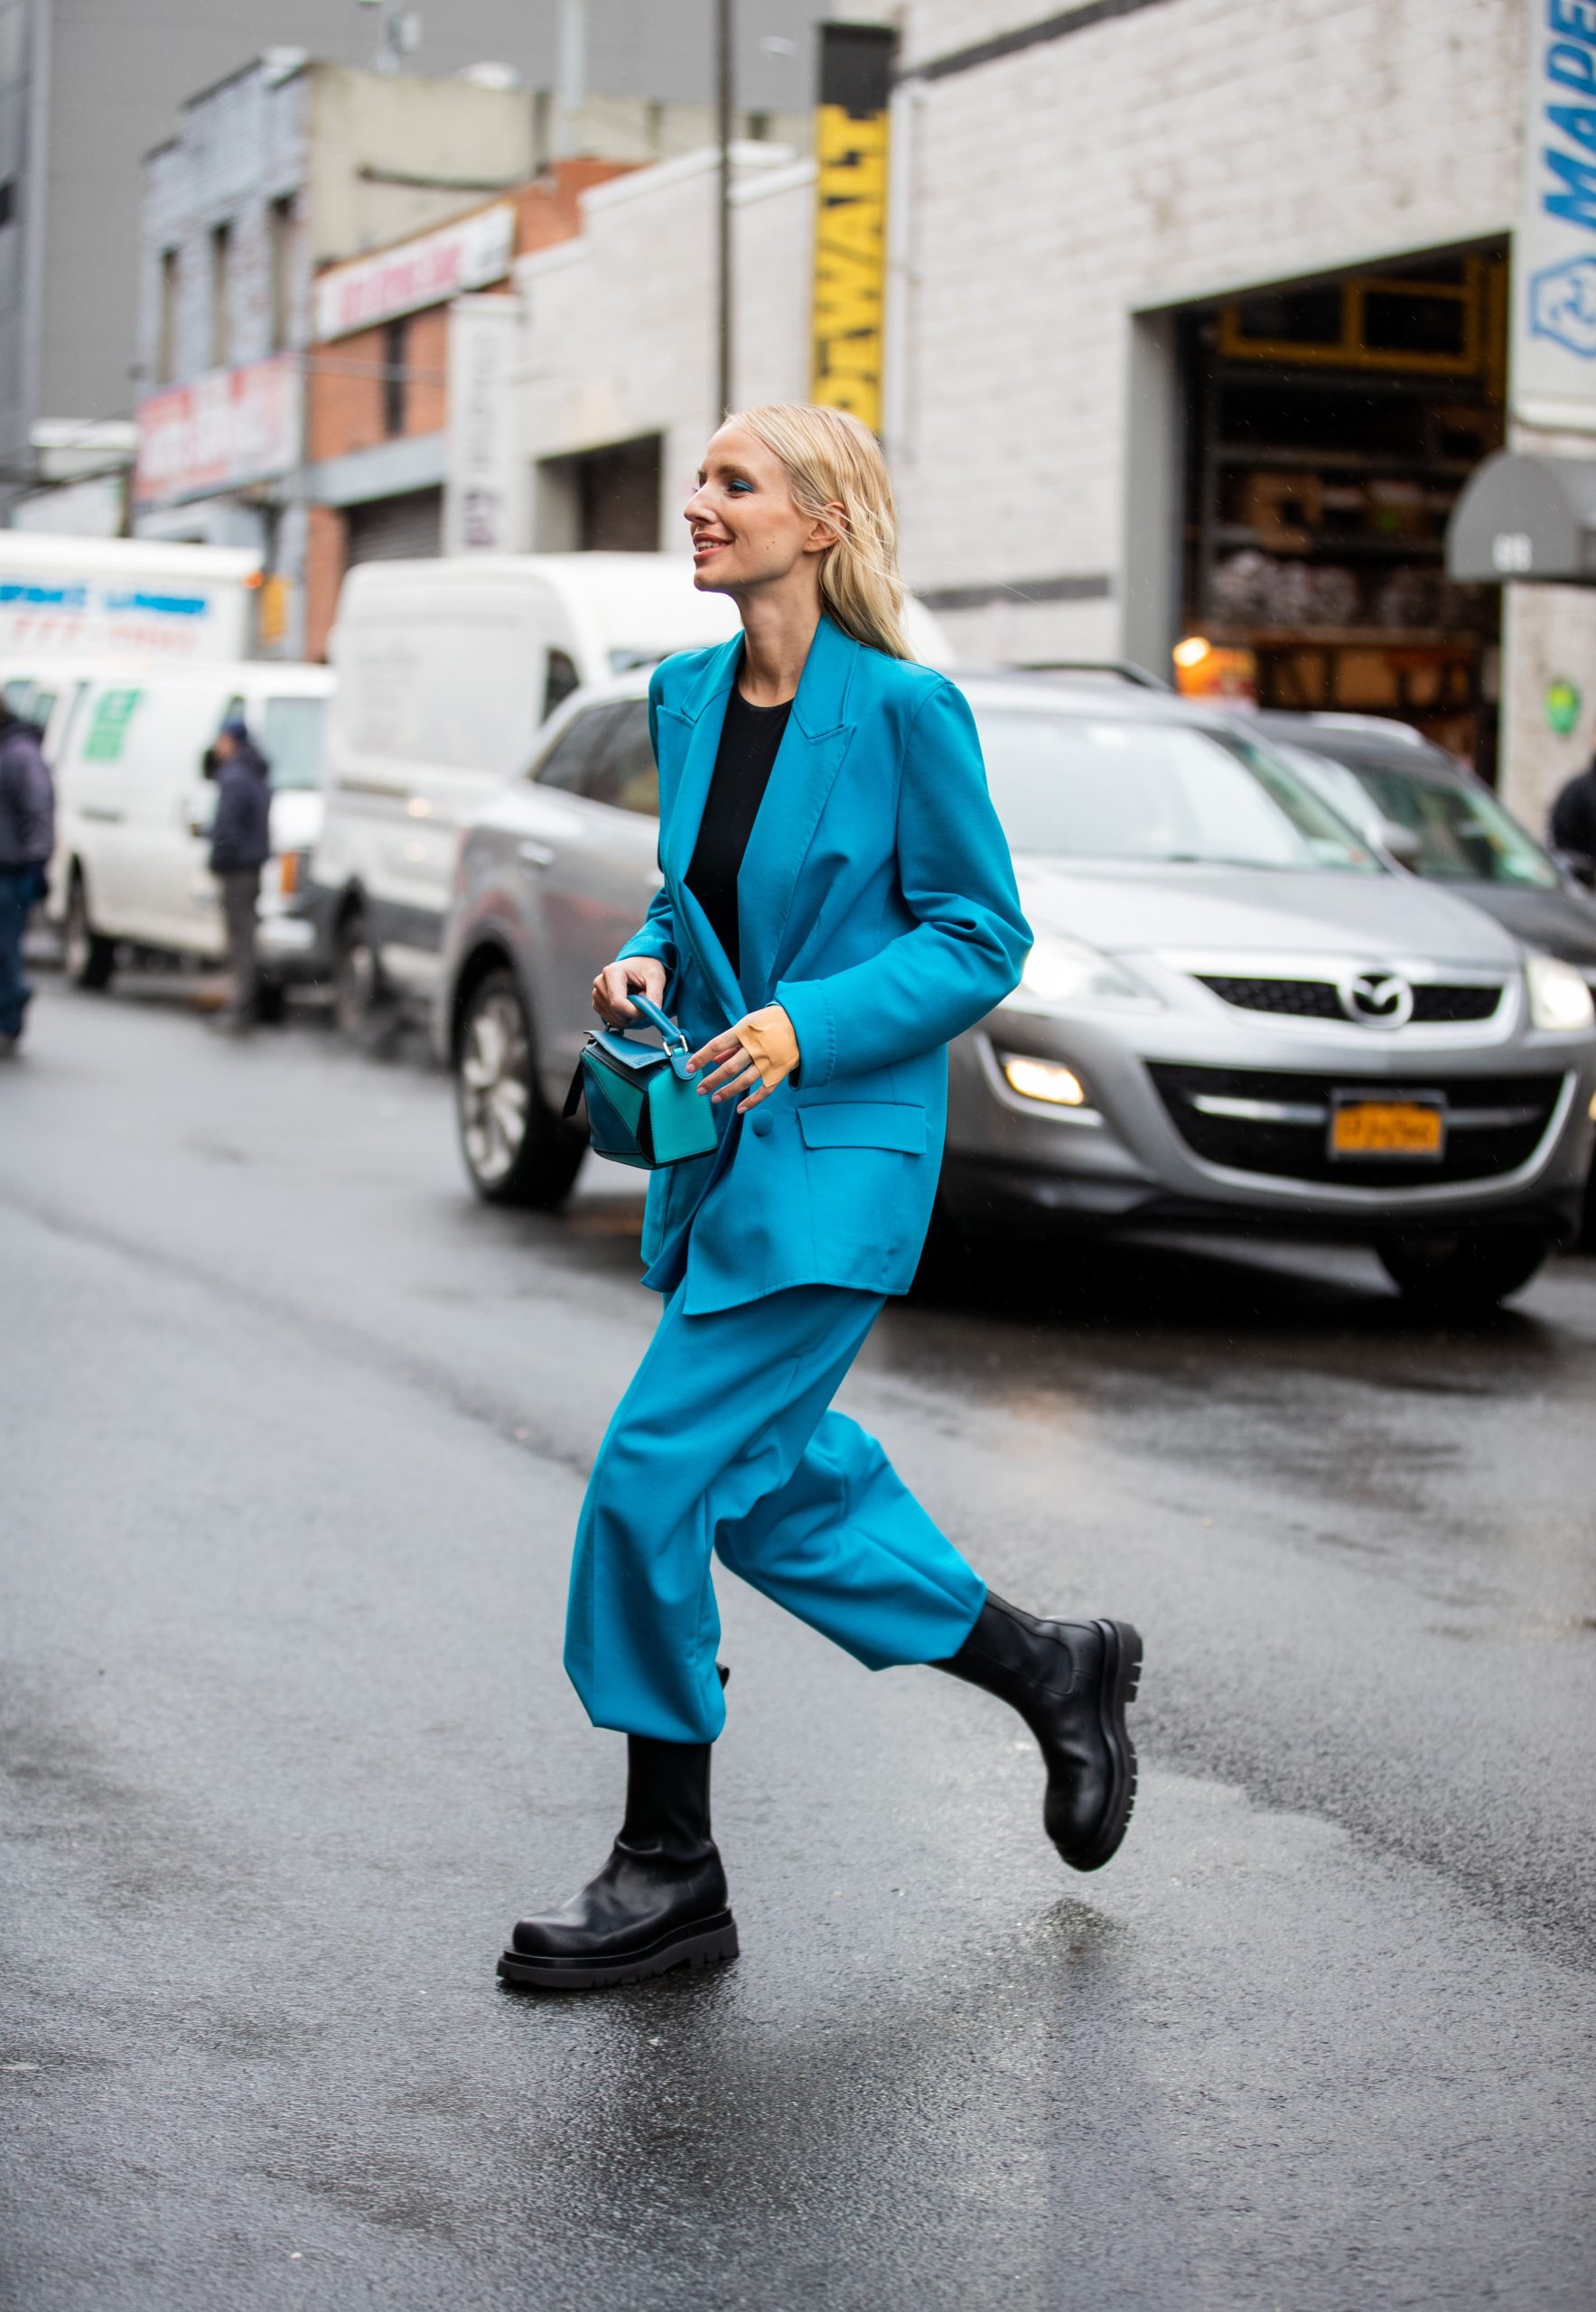 Leonie Hanne con un traje azul turquesa durante la Fashion Week de Nueva York.